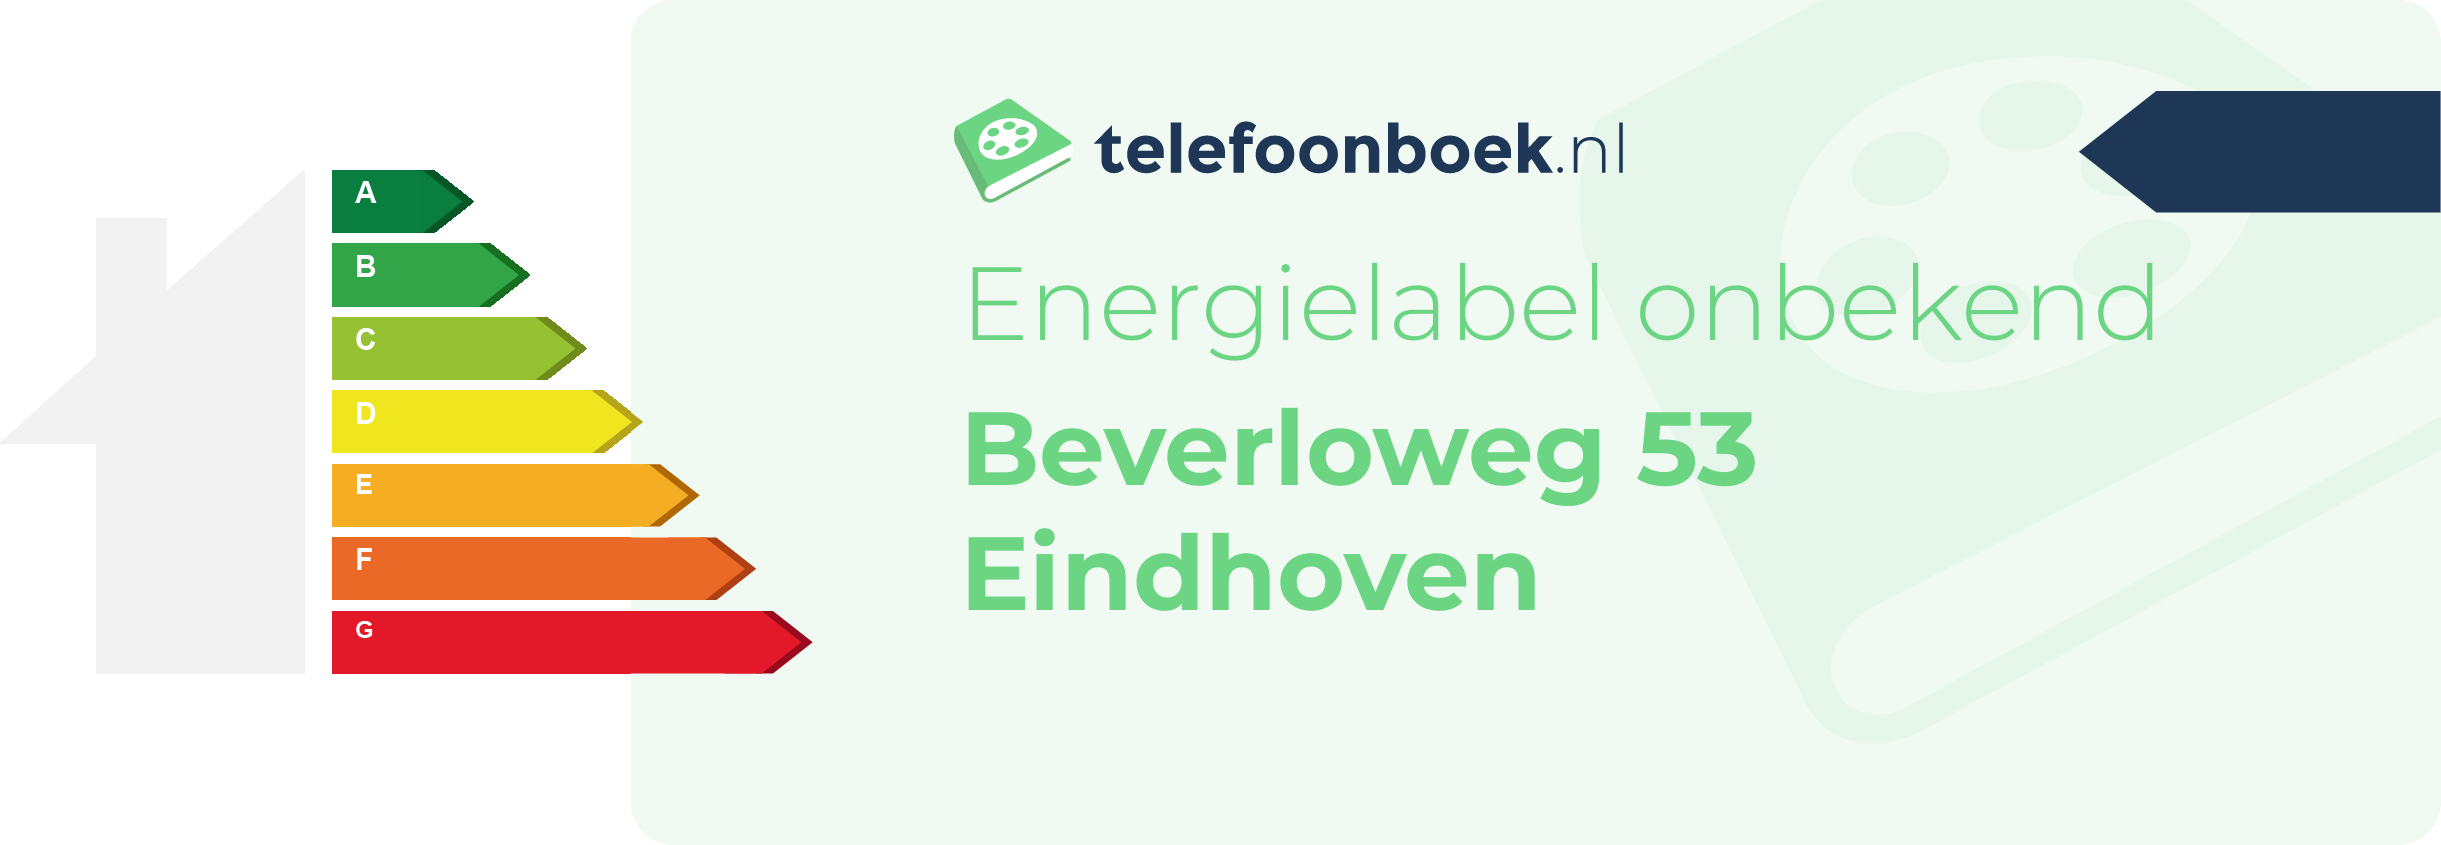 Energielabel Beverloweg 53 Eindhoven